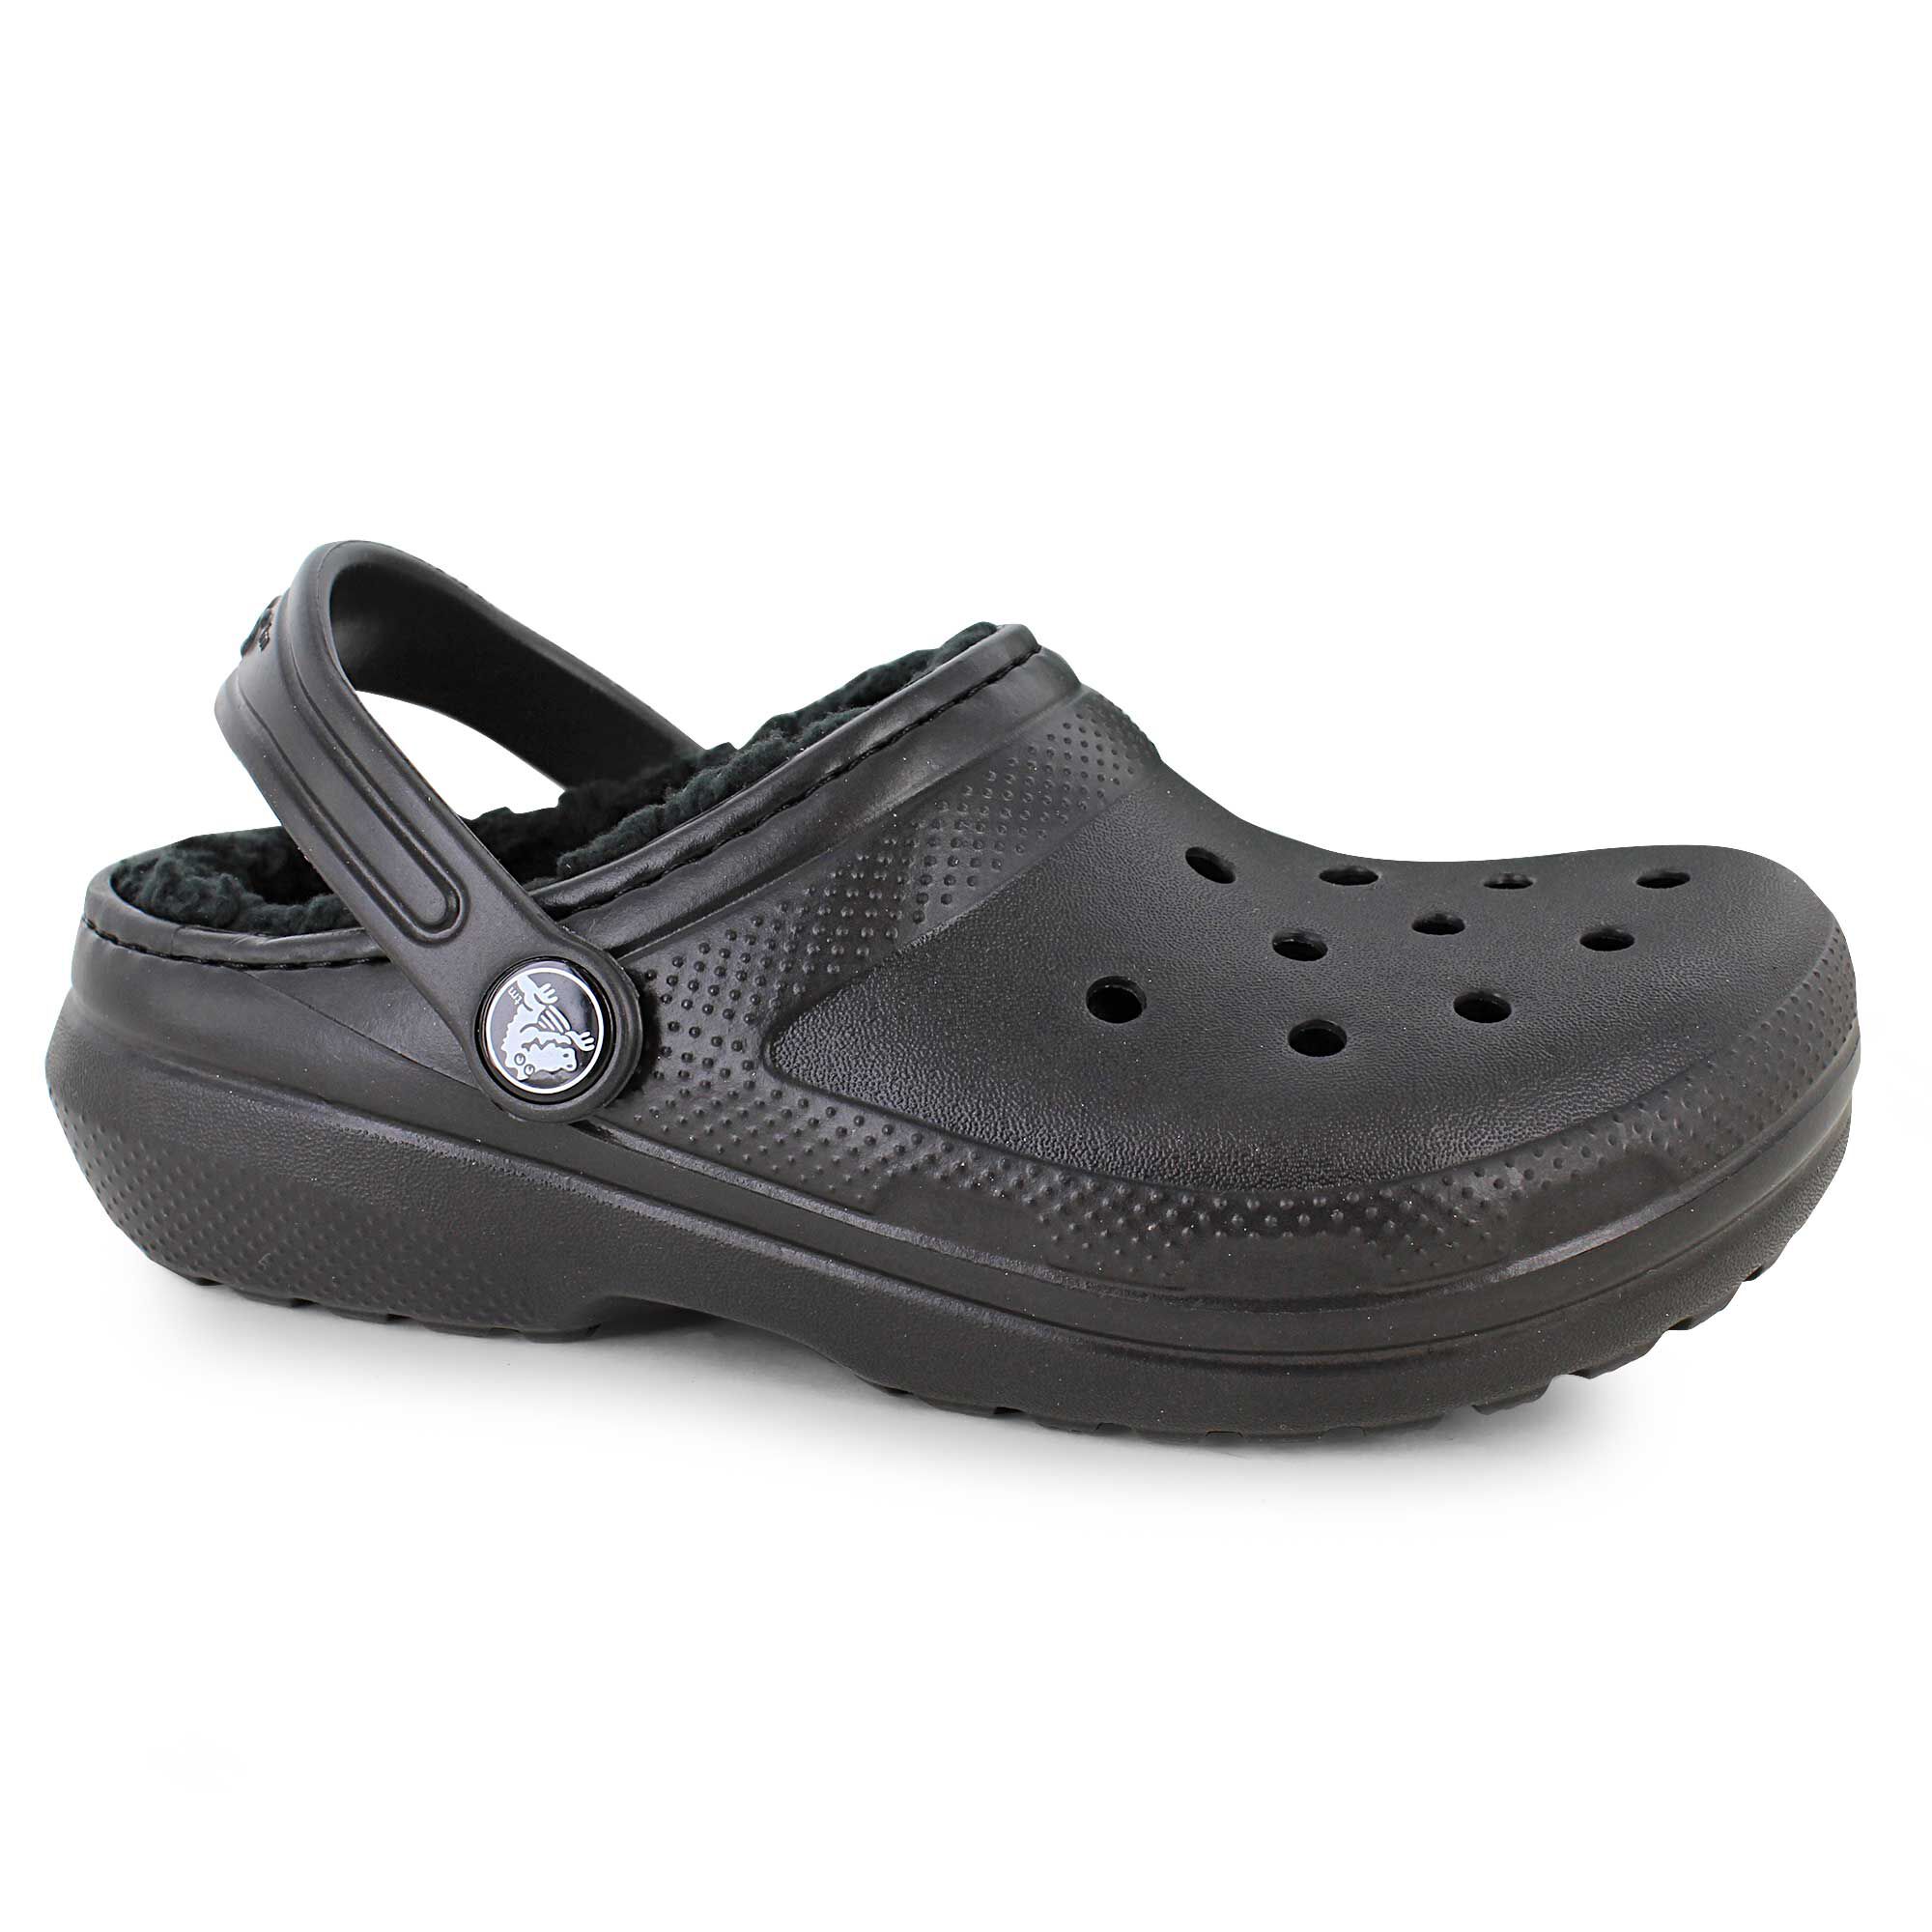 shoe department women's crocs